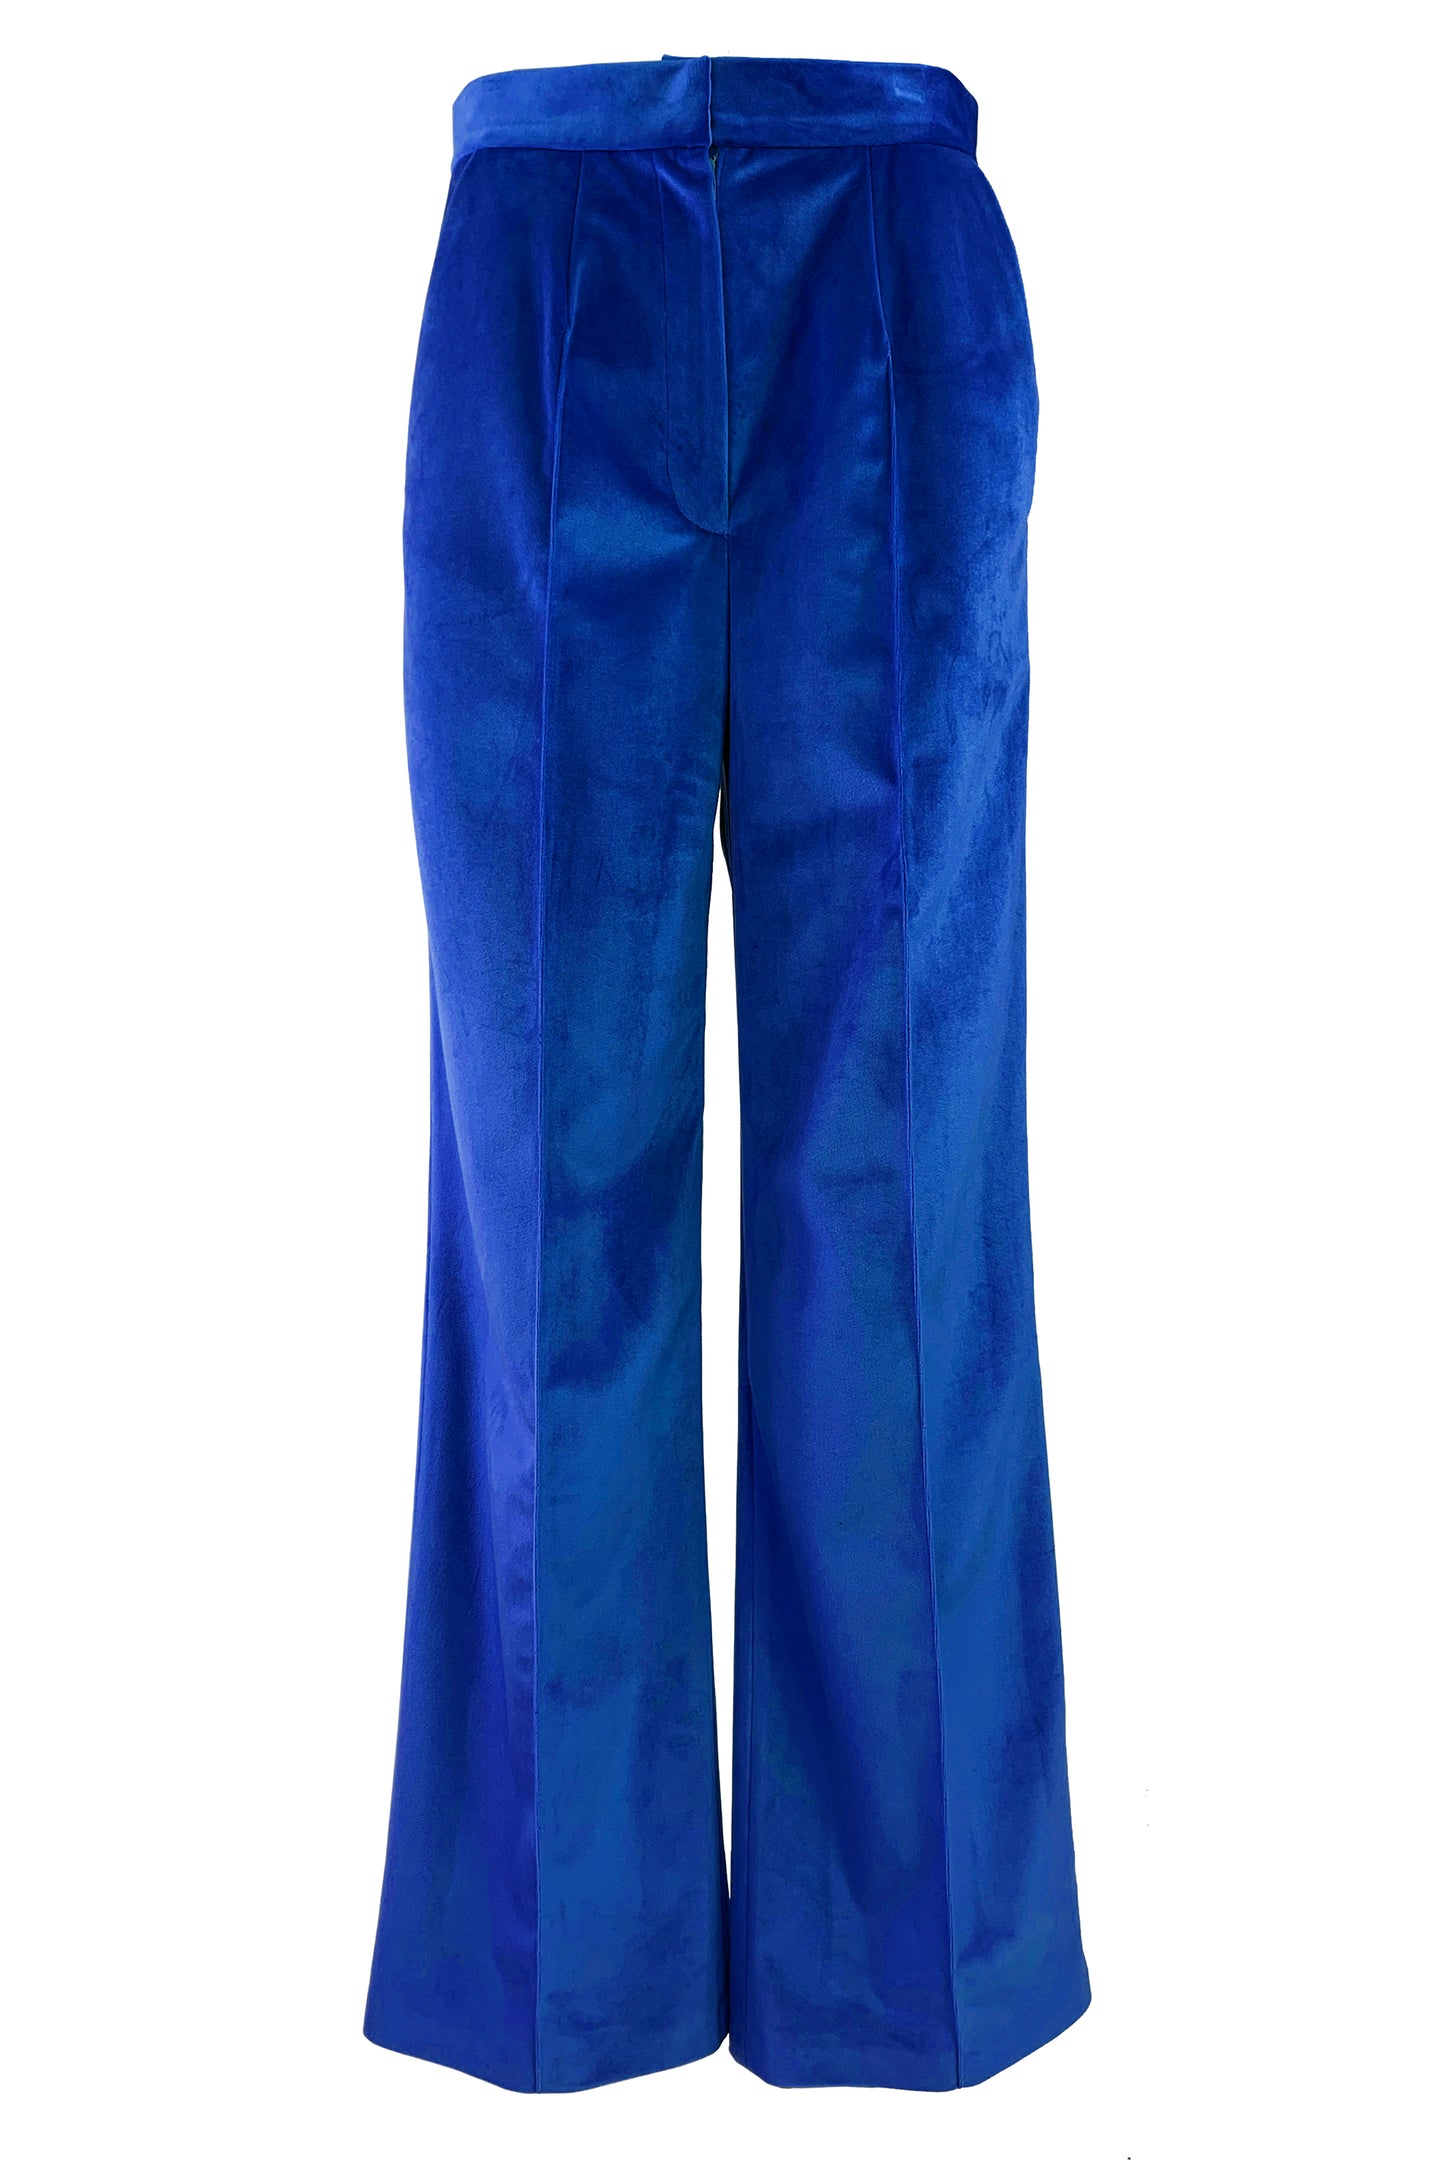 Electric blue velvet trousers